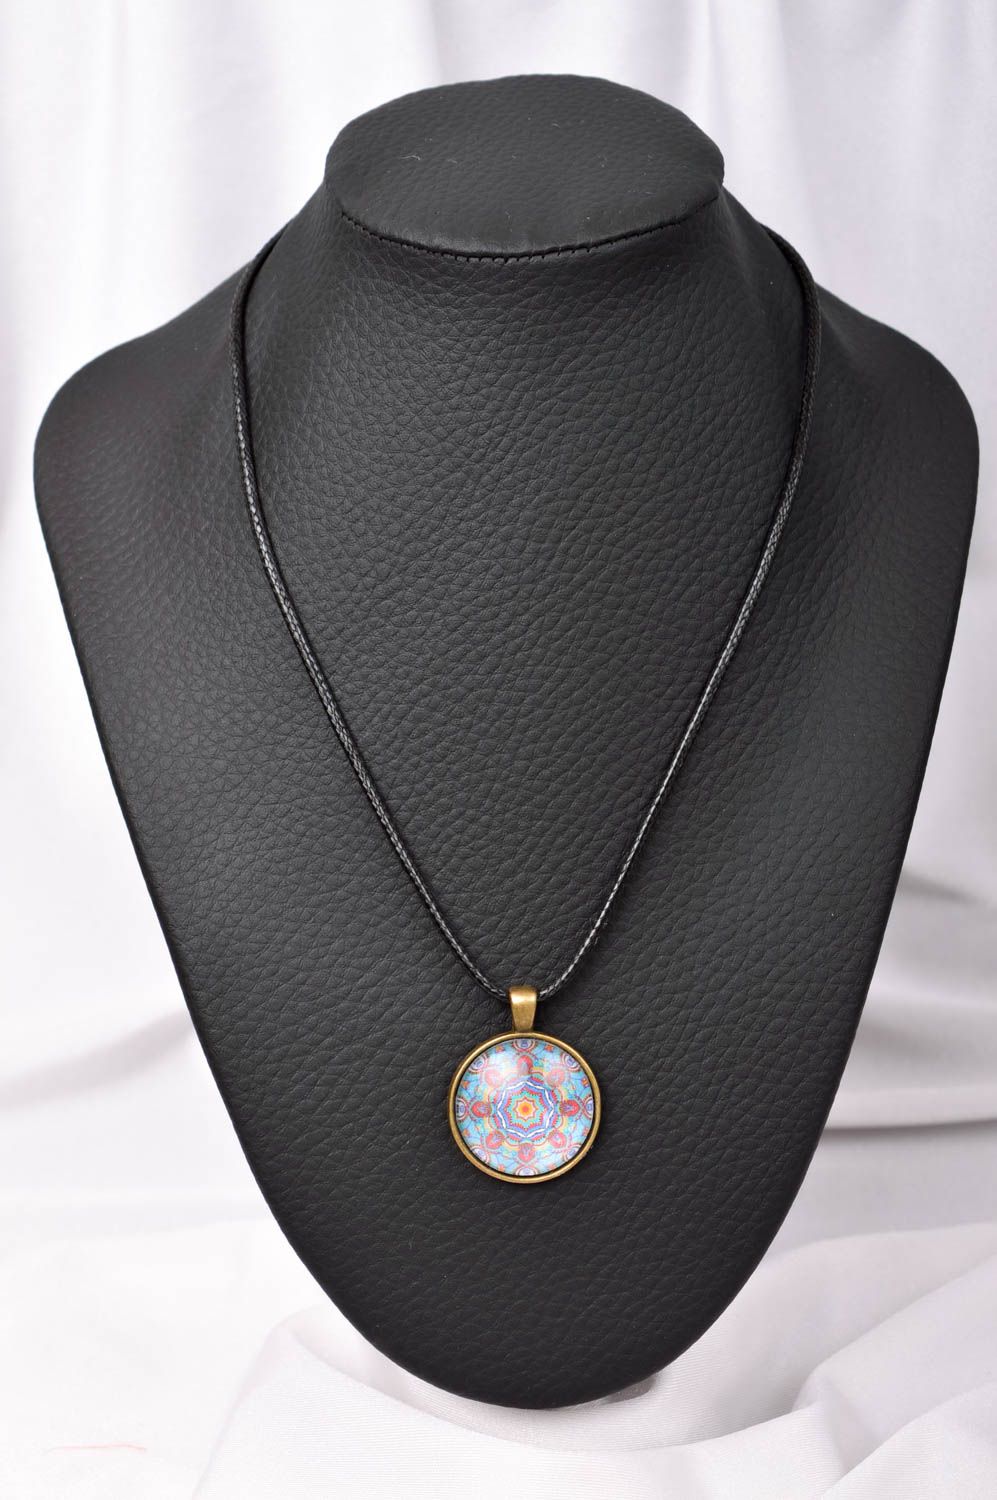 Handmade designer pendant everyday accessories for women glass pendant for girl photo 1